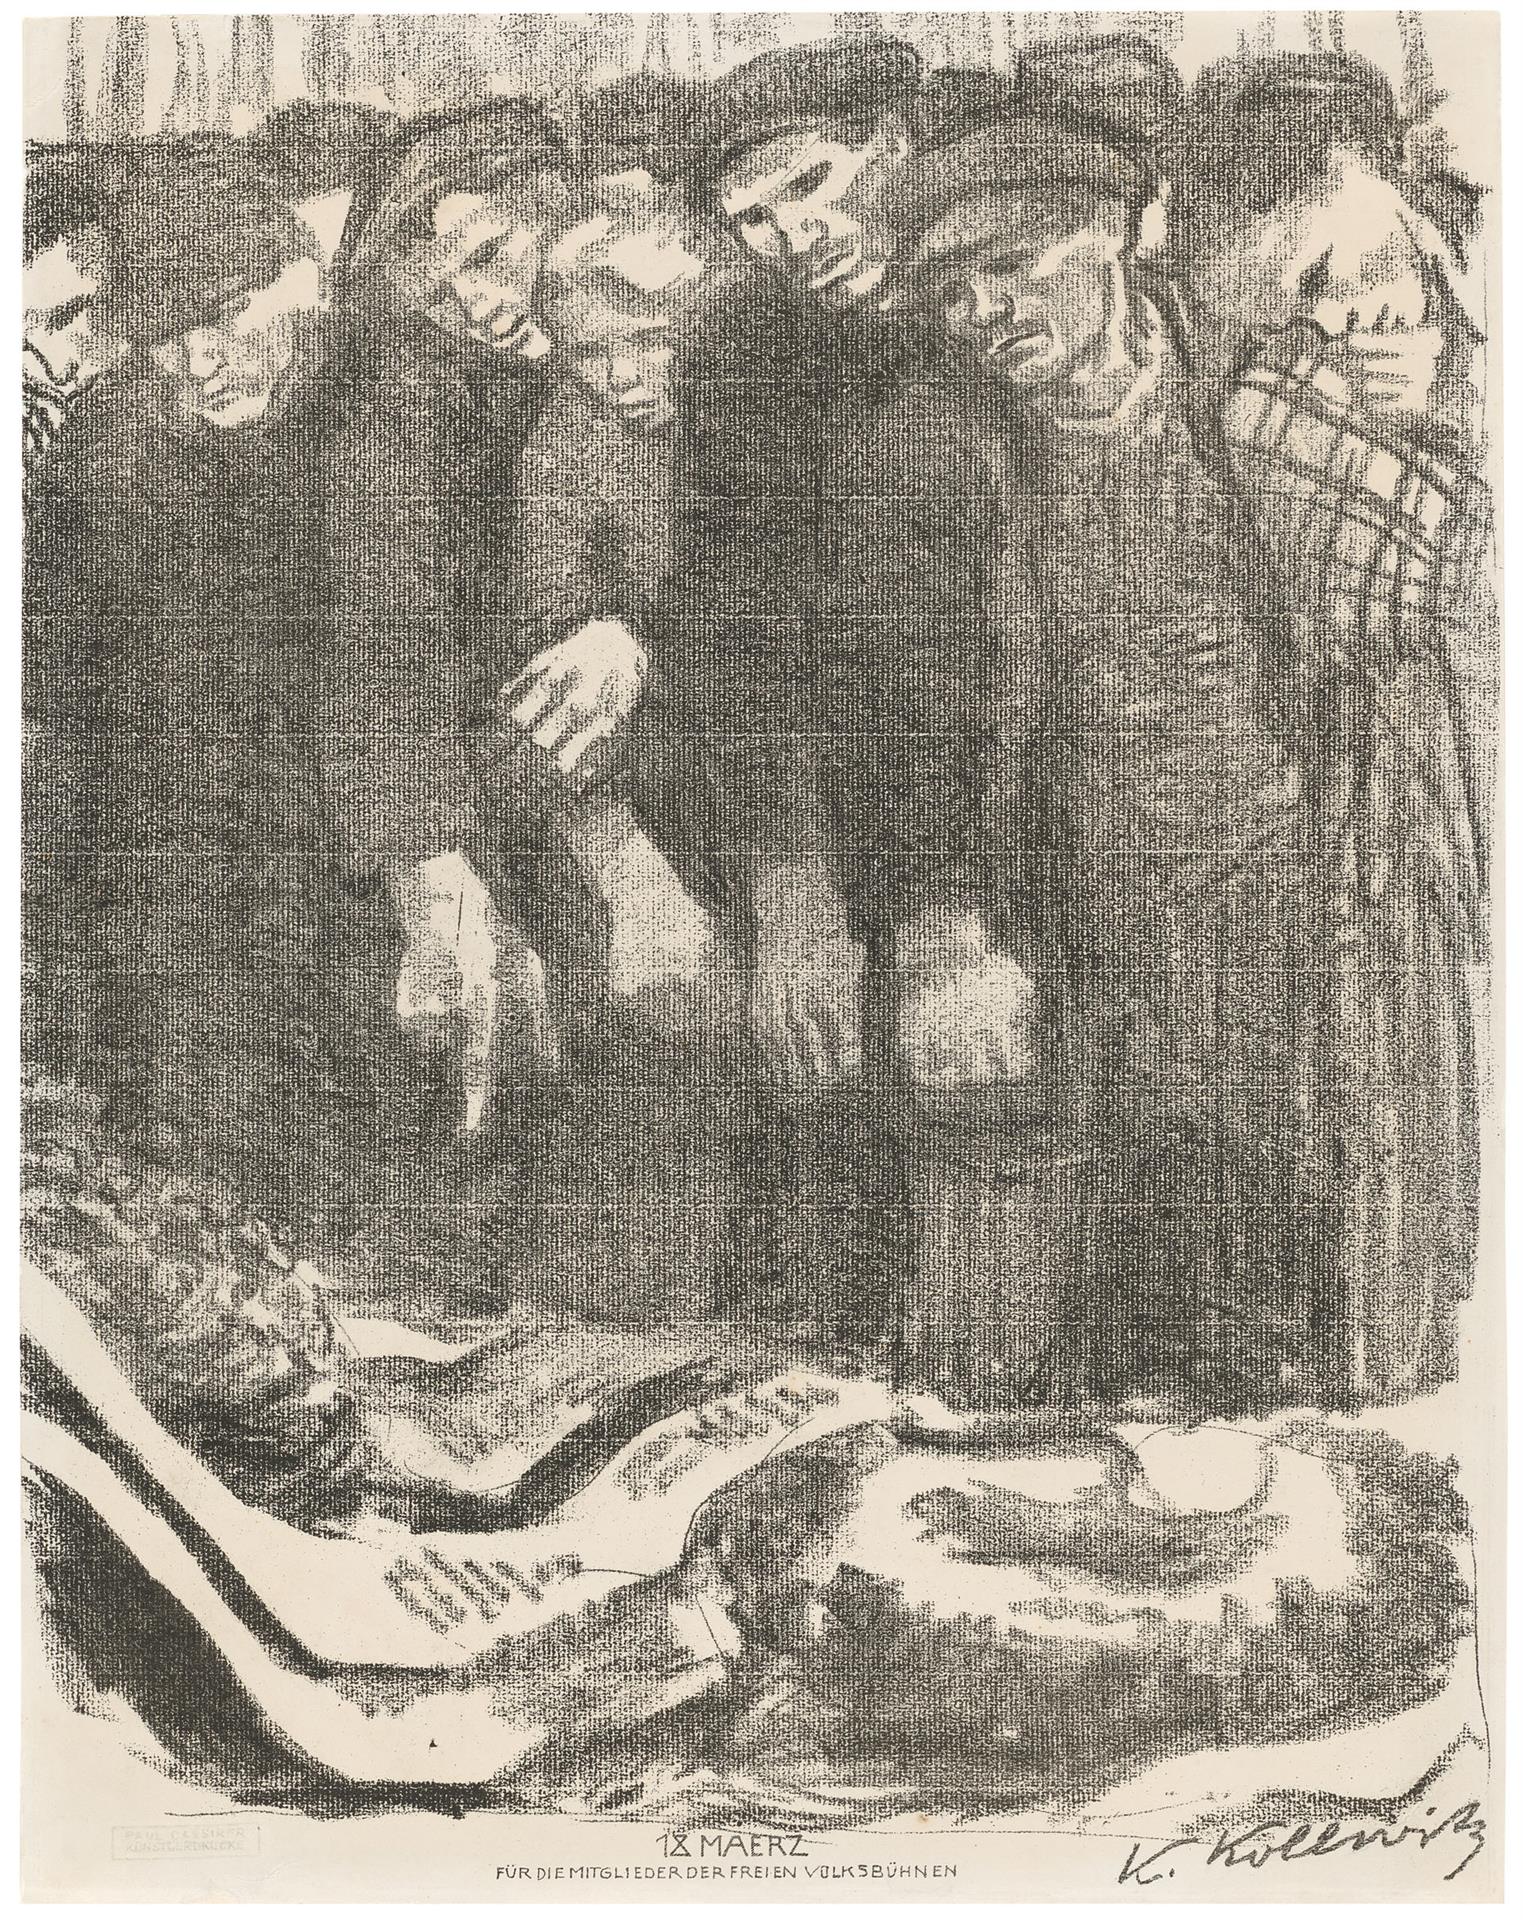 Käthe Kollwitz, Märzfriedhof, Dritte Fassung, 1913, Kreidelithographie (Umdruck von einer unbekannten Zeichnung auf geripptem Bütten), Kn 129